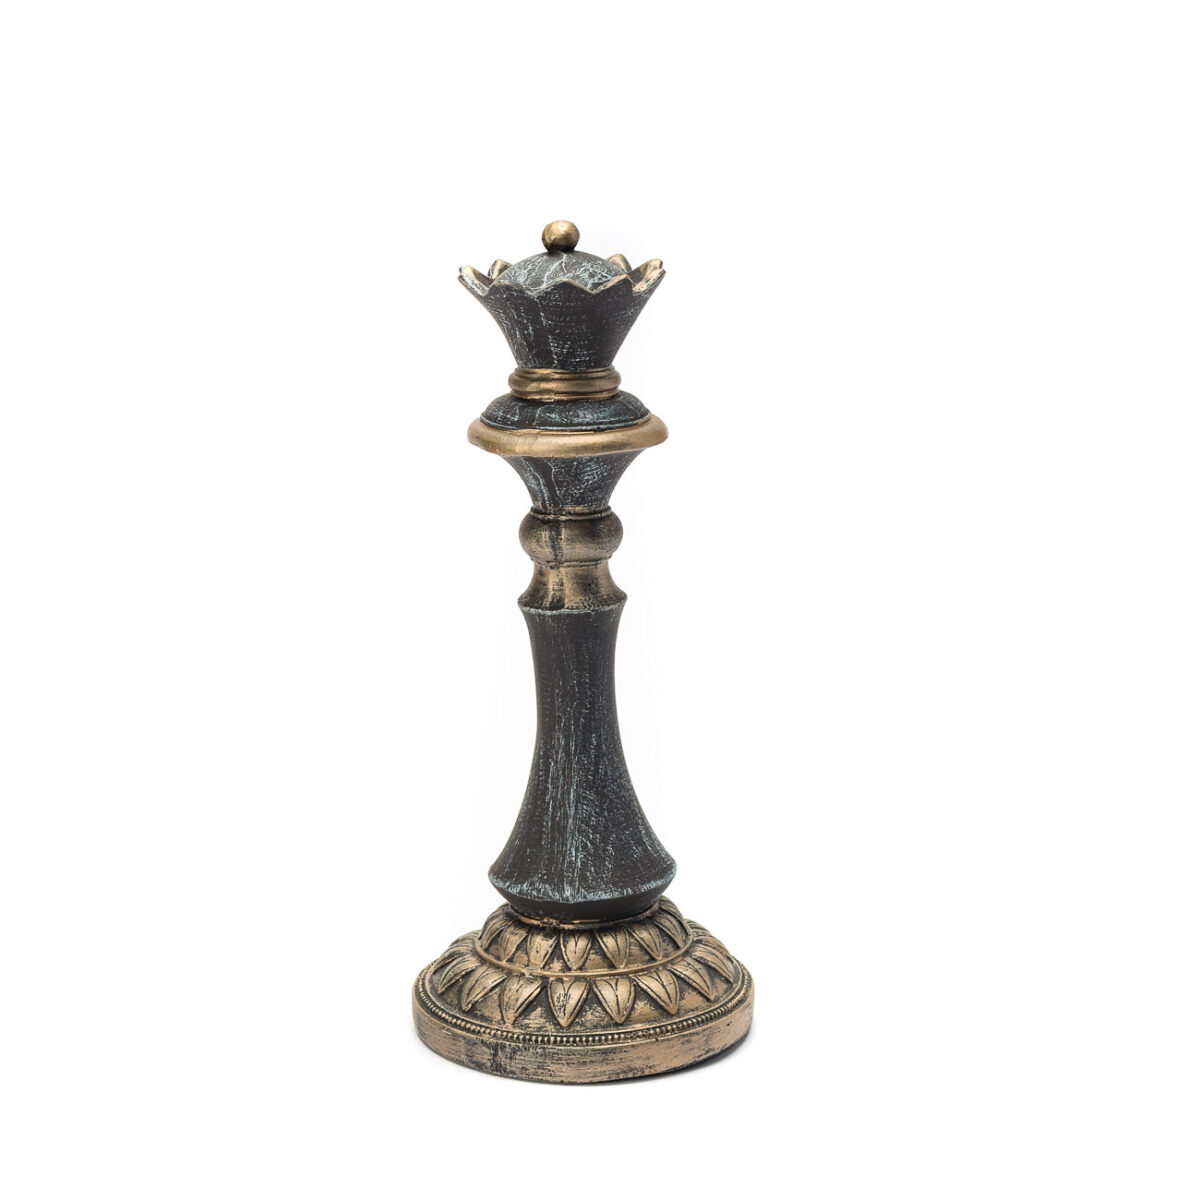 Use o xadrez para decorar qualquer ambiente — Blog do Zap